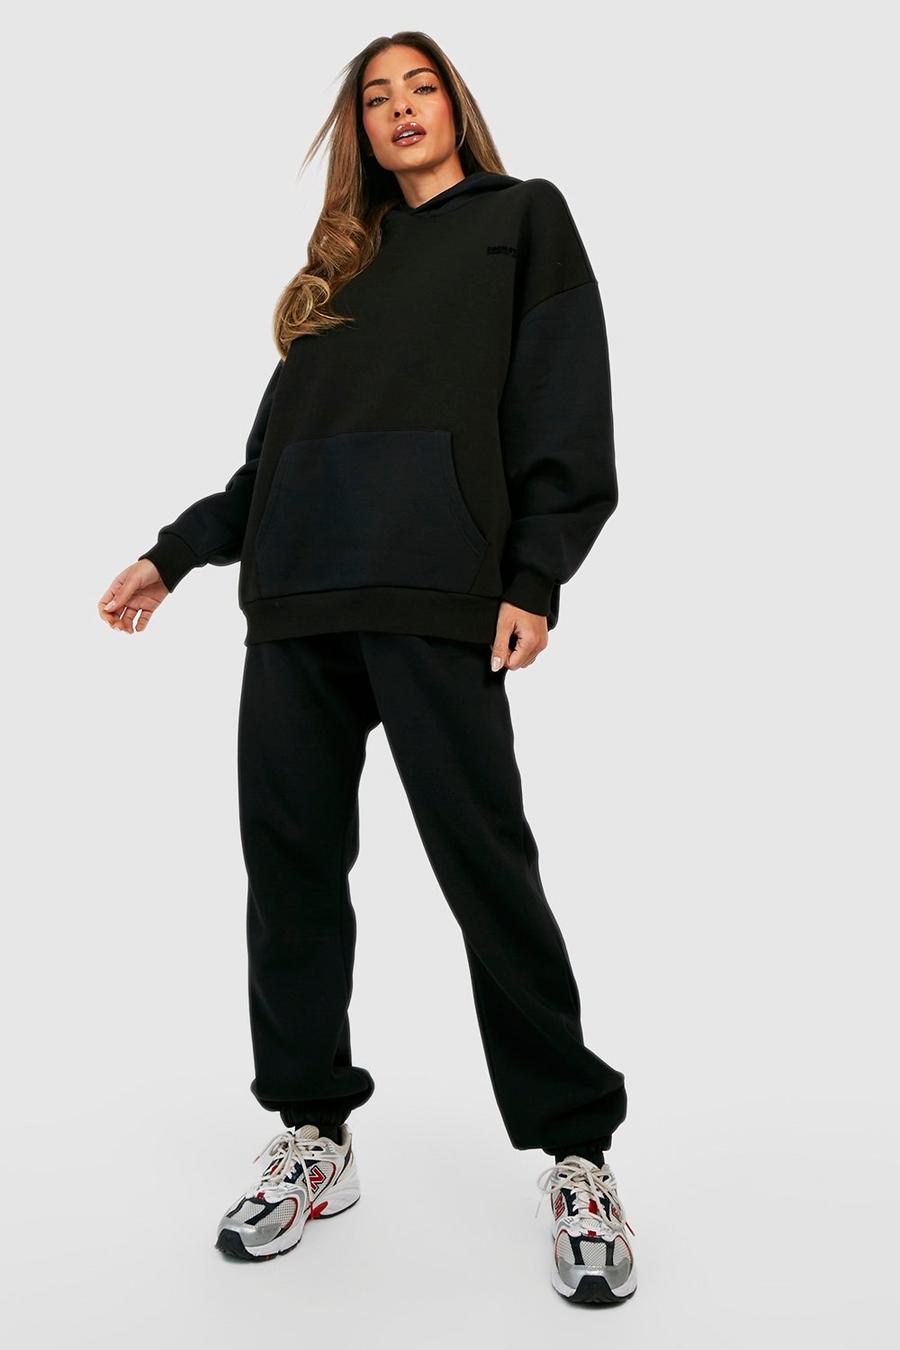 Pantalón deportivo Premium con botamanga y eslogan aterciopelado, Black nero